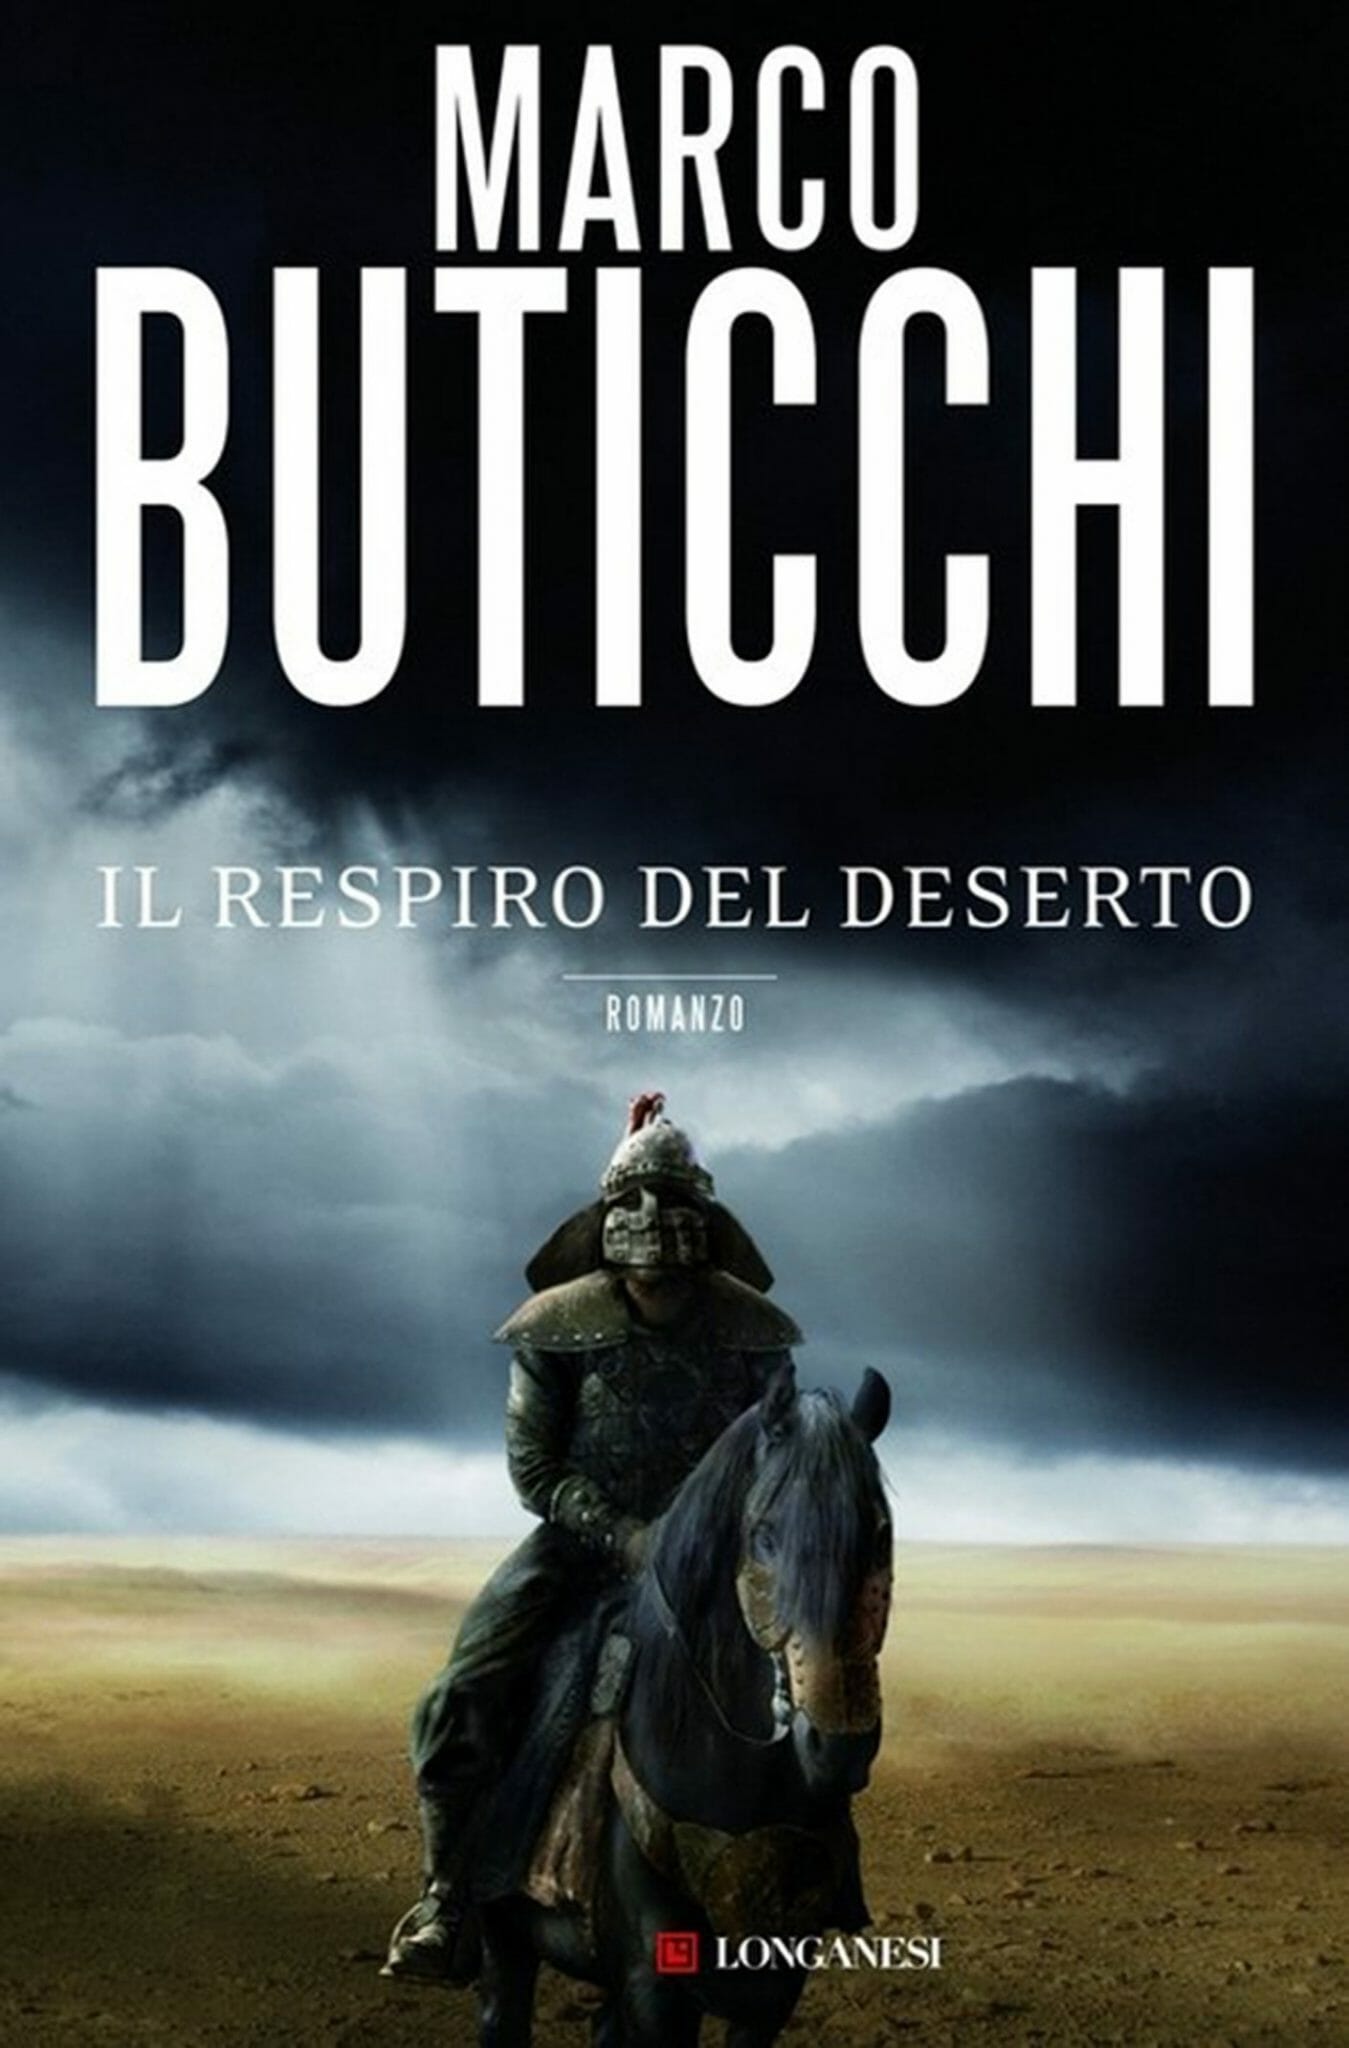 Marco Buticchi - Il respiro del deserto